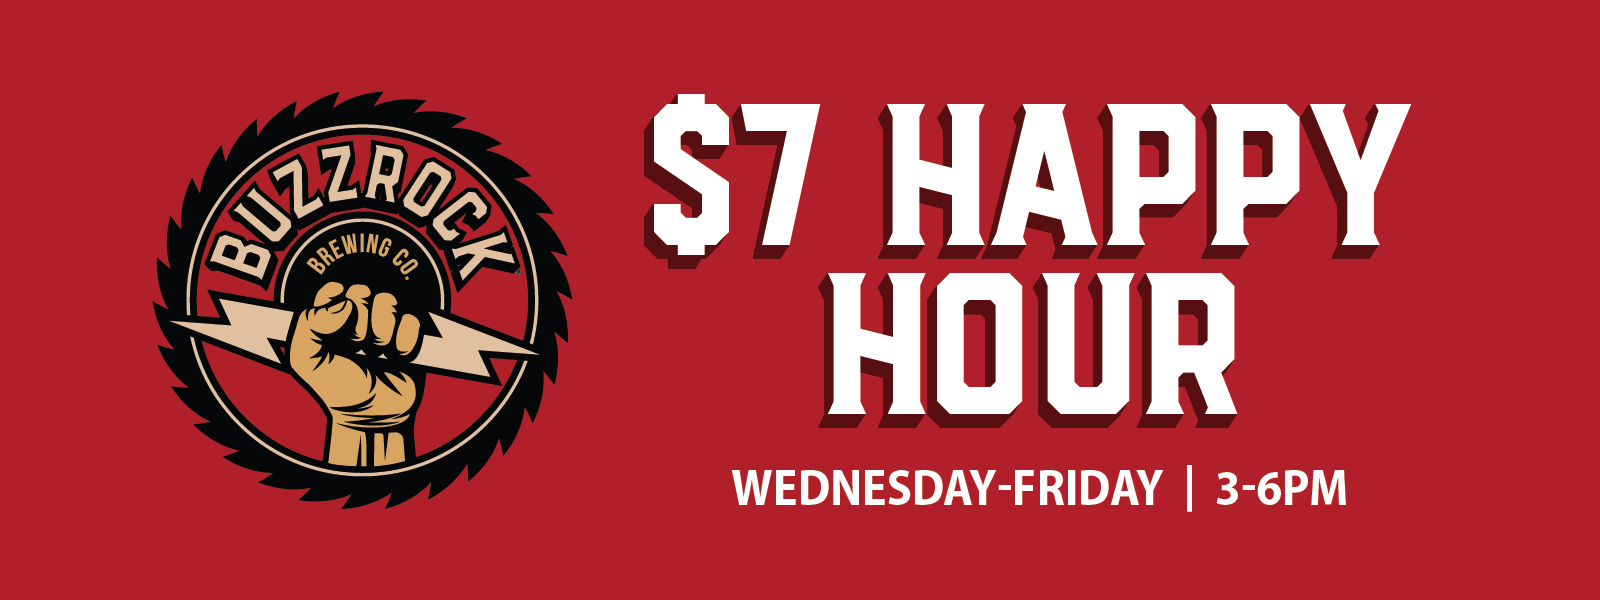 Brews-Hall-$6-Happy-Hour-Wed-Fri